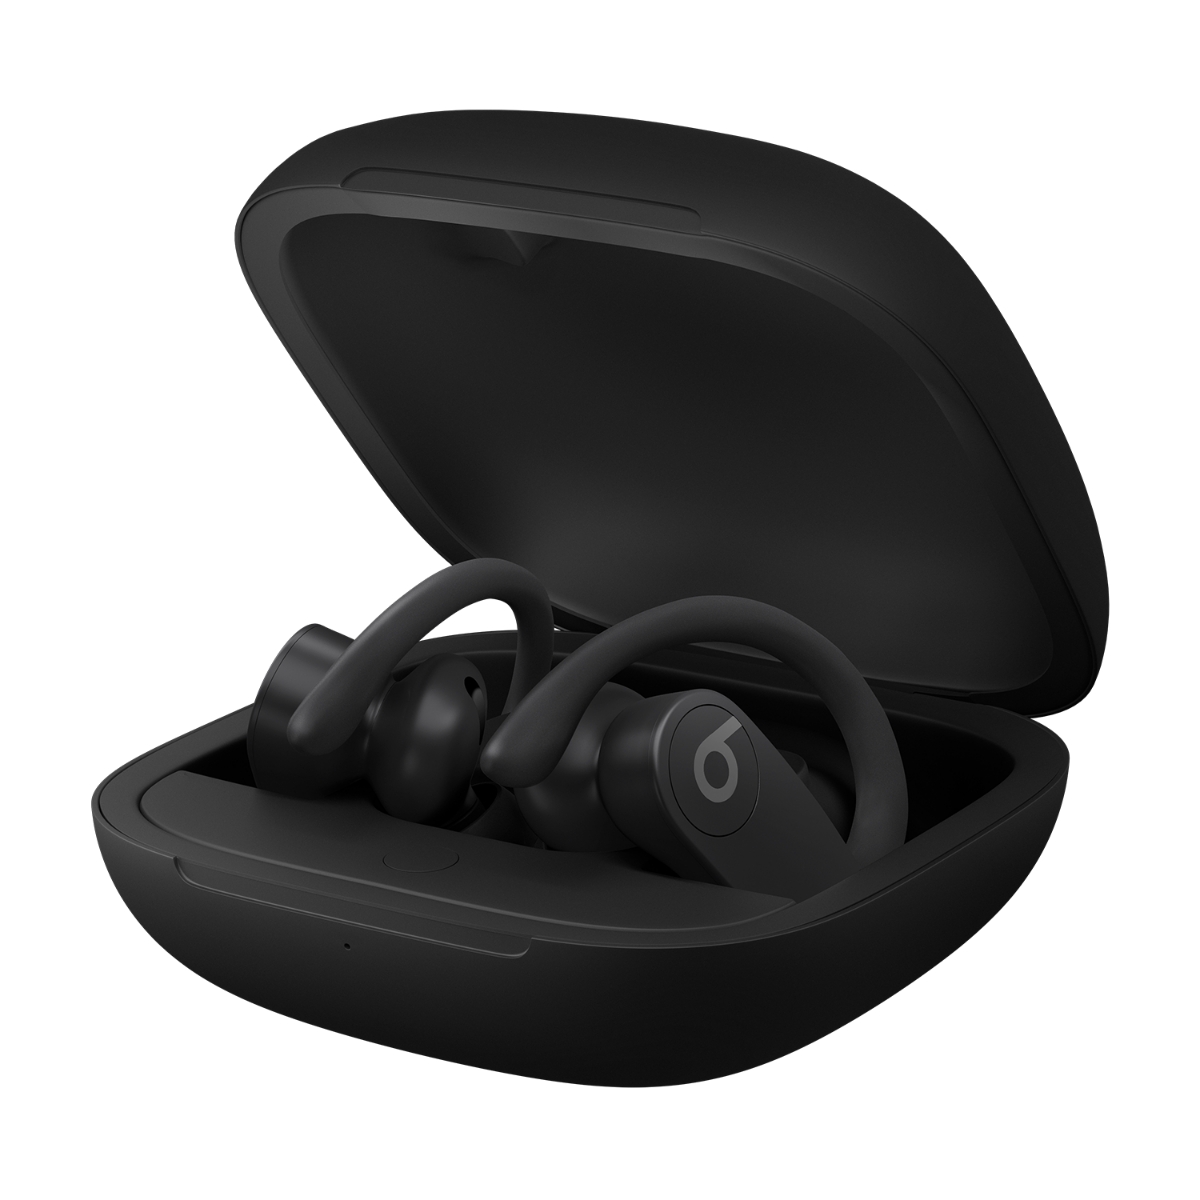 Powerbeats Pro - True Wireless Earbuds - Beats